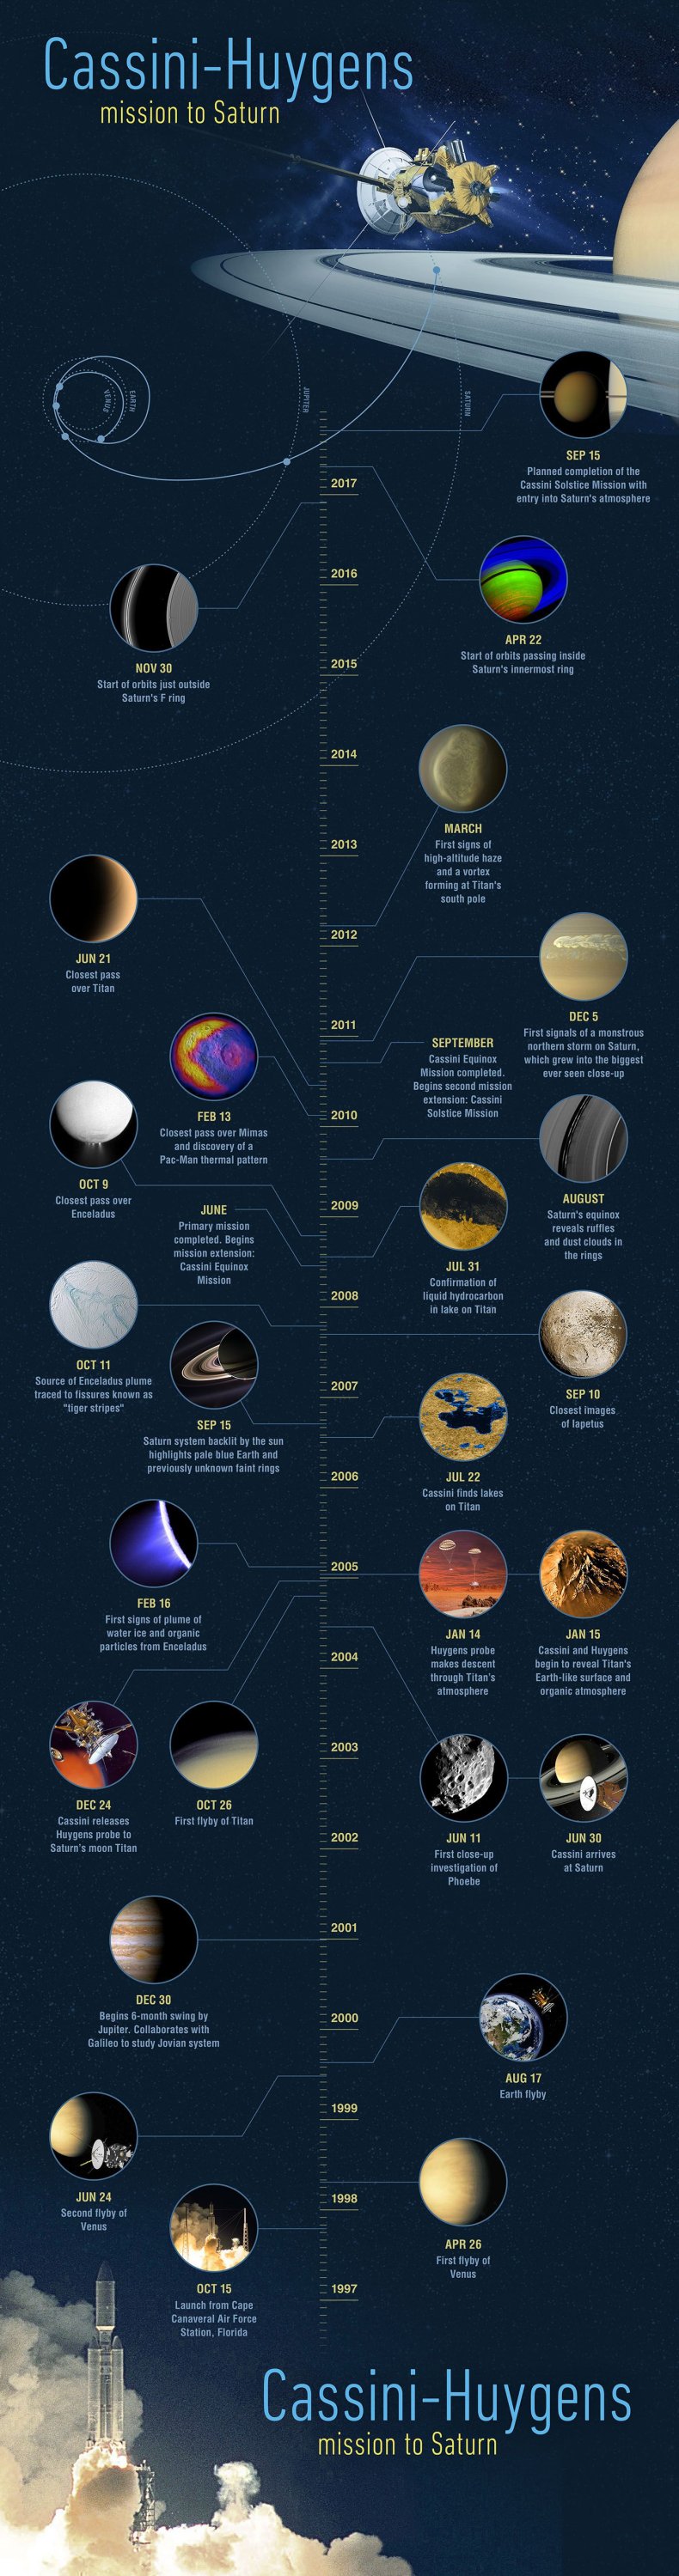 Cassini timeline